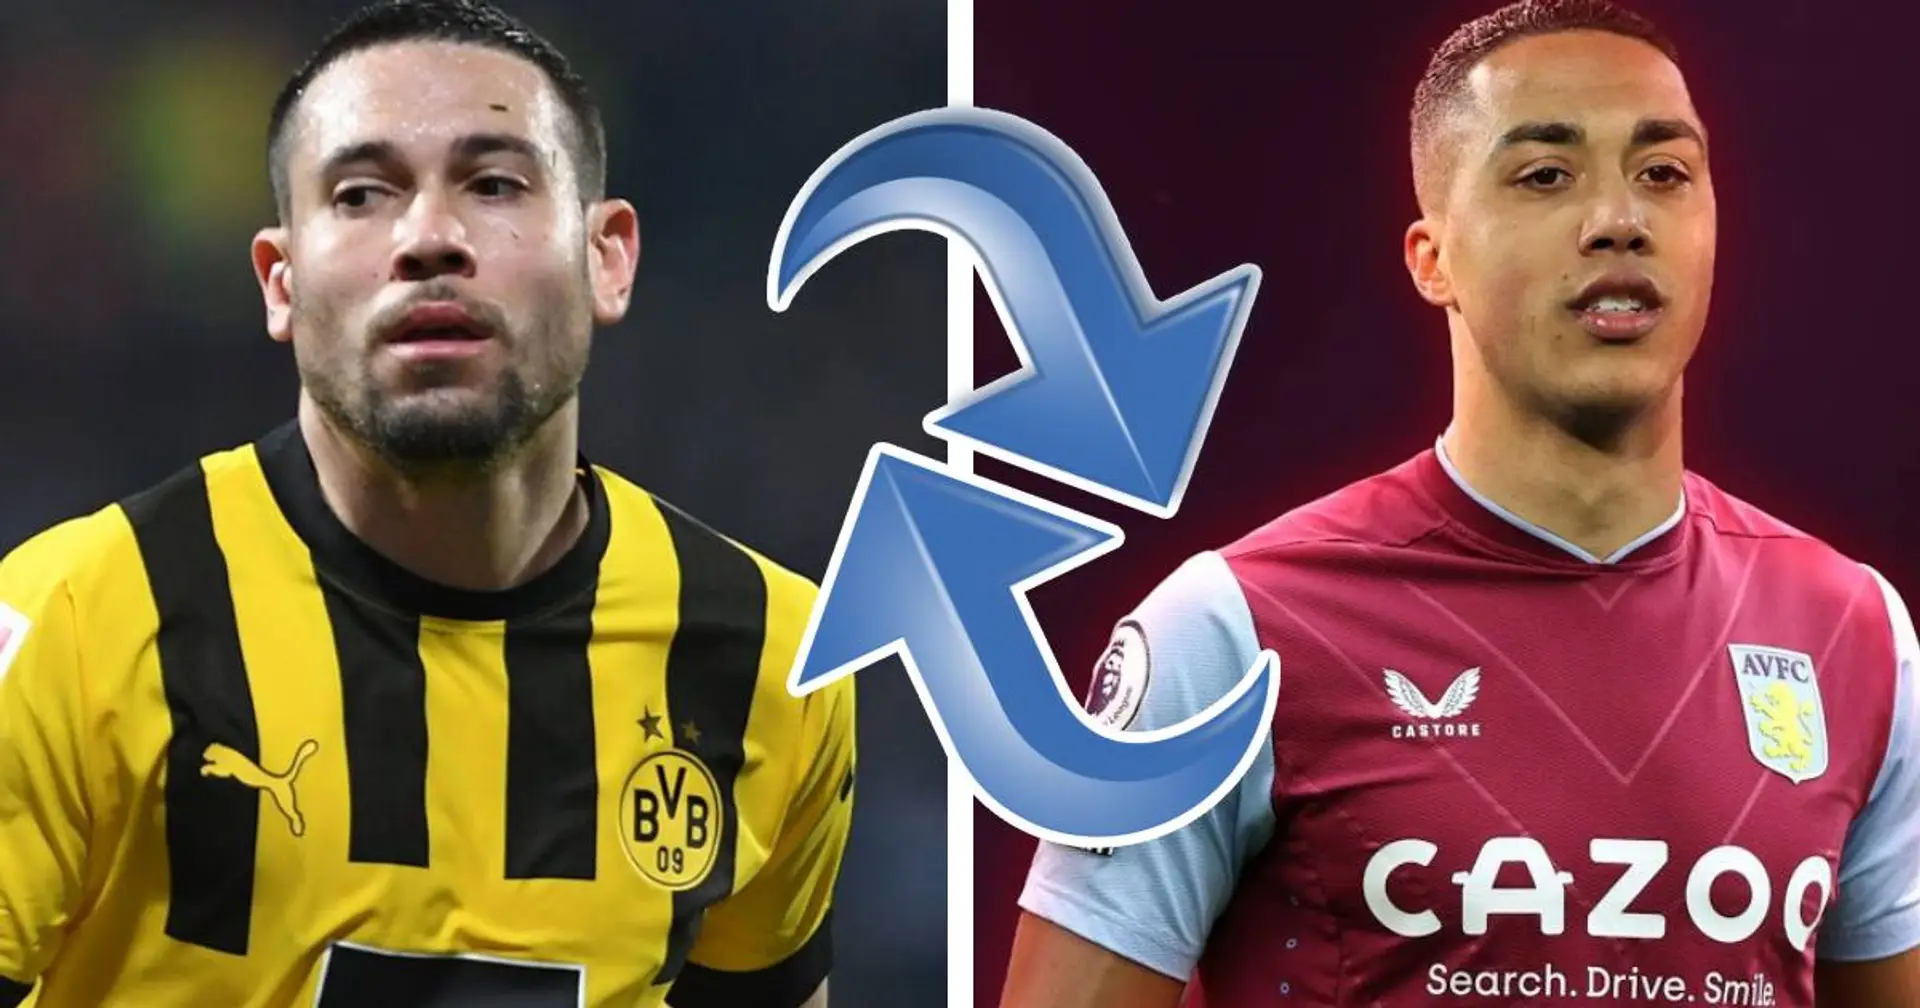 Guerreiro-Deal bestätigt, Tielemans zu Aston Villa: Wichtigste Transfer-News des Tages - bei Bayern und weltweit